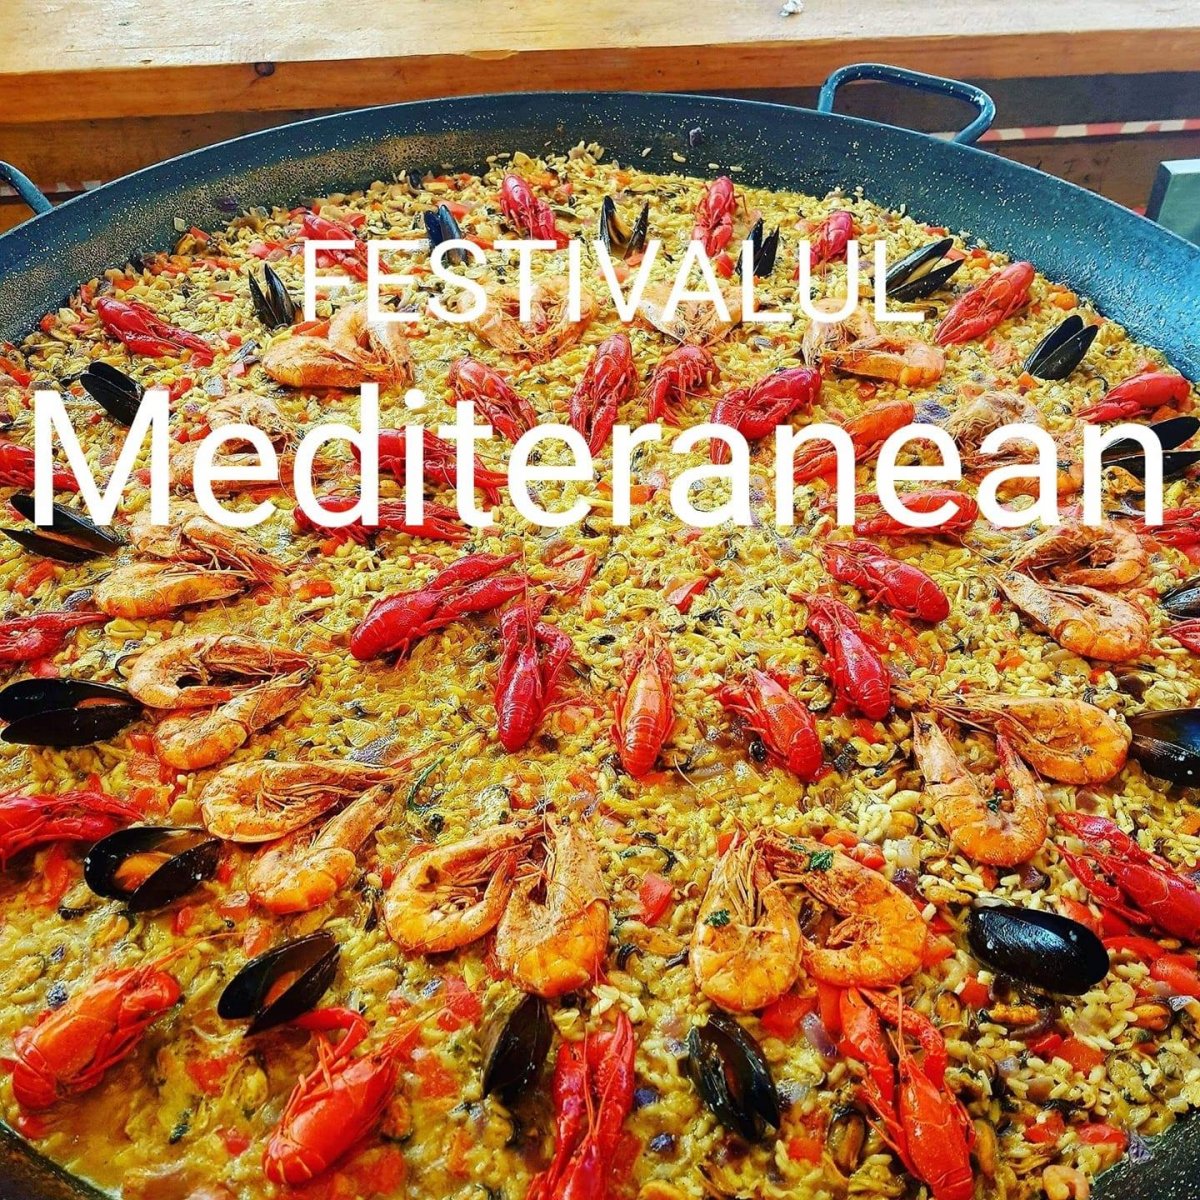 Precizări cu privire la organizarea Festivalului Mediteranean